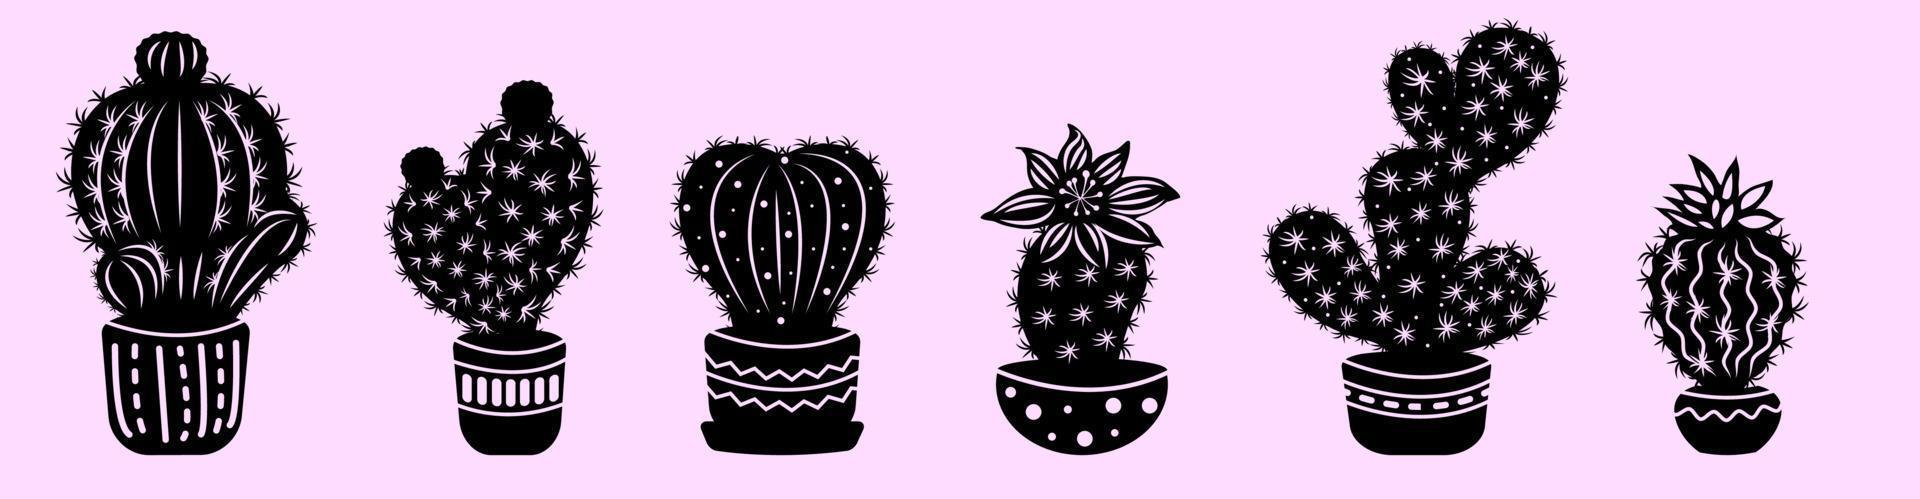 conjunto de cactus de contorno negro en macetas decoradas. vector